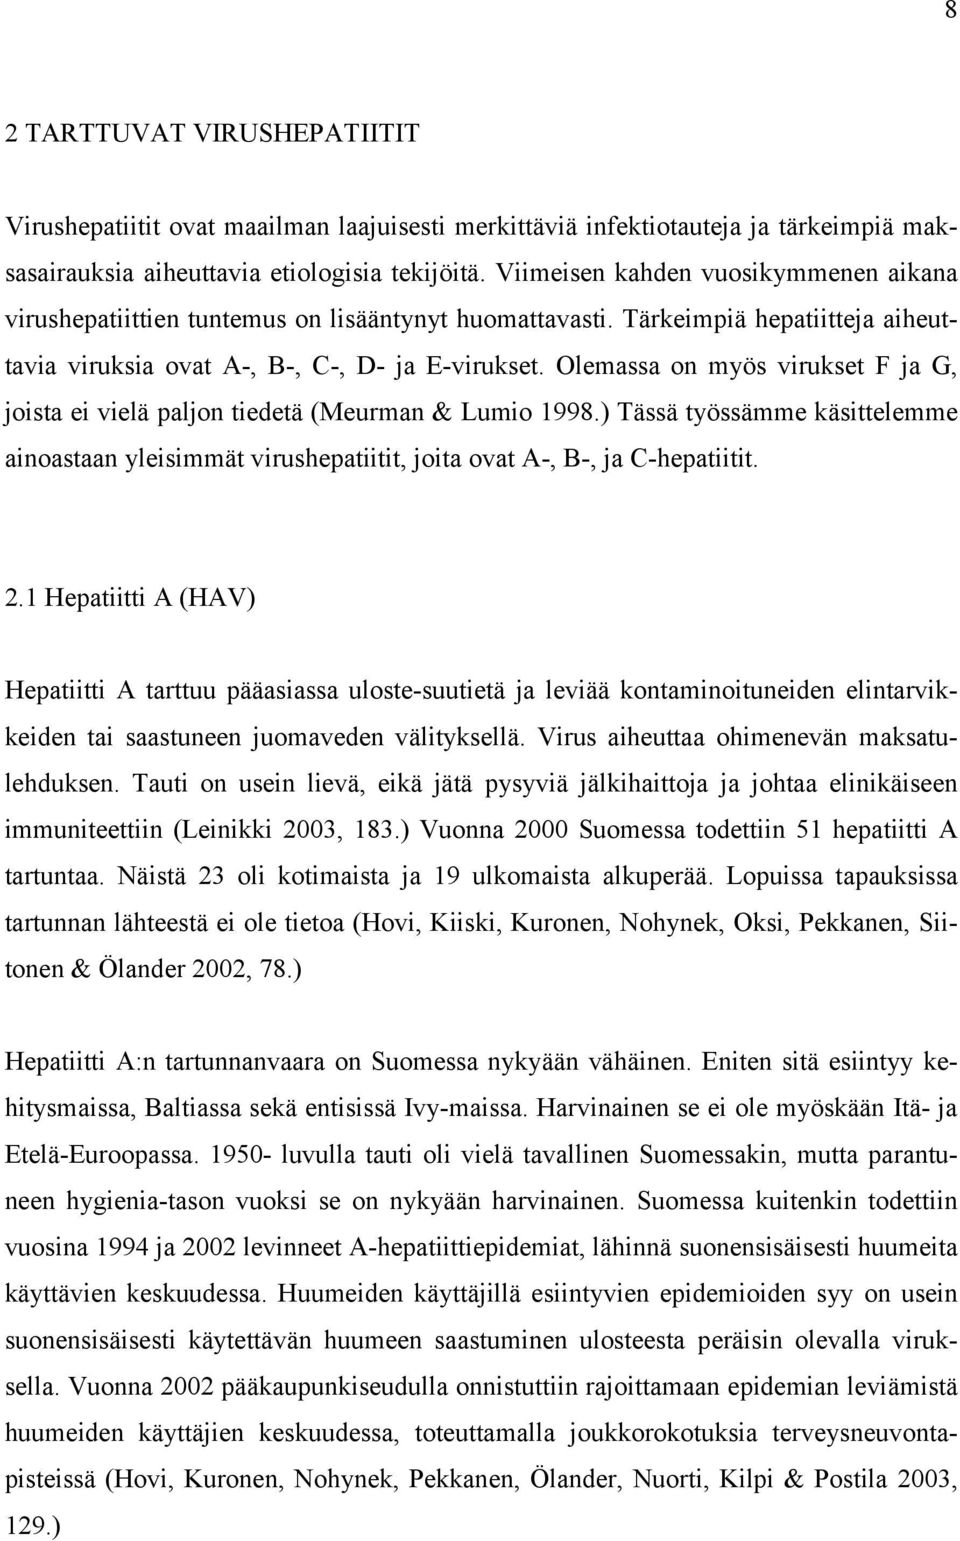 Olemassa on myös virukset F ja G, joista ei vielä paljon tiedetä (Meurman & Lumio 1998.) Tässä työssämme käsittelemme ainoastaan yleisimmät virushepatiitit, joita ovat A-, B-, ja C-hepatiitit. 2.